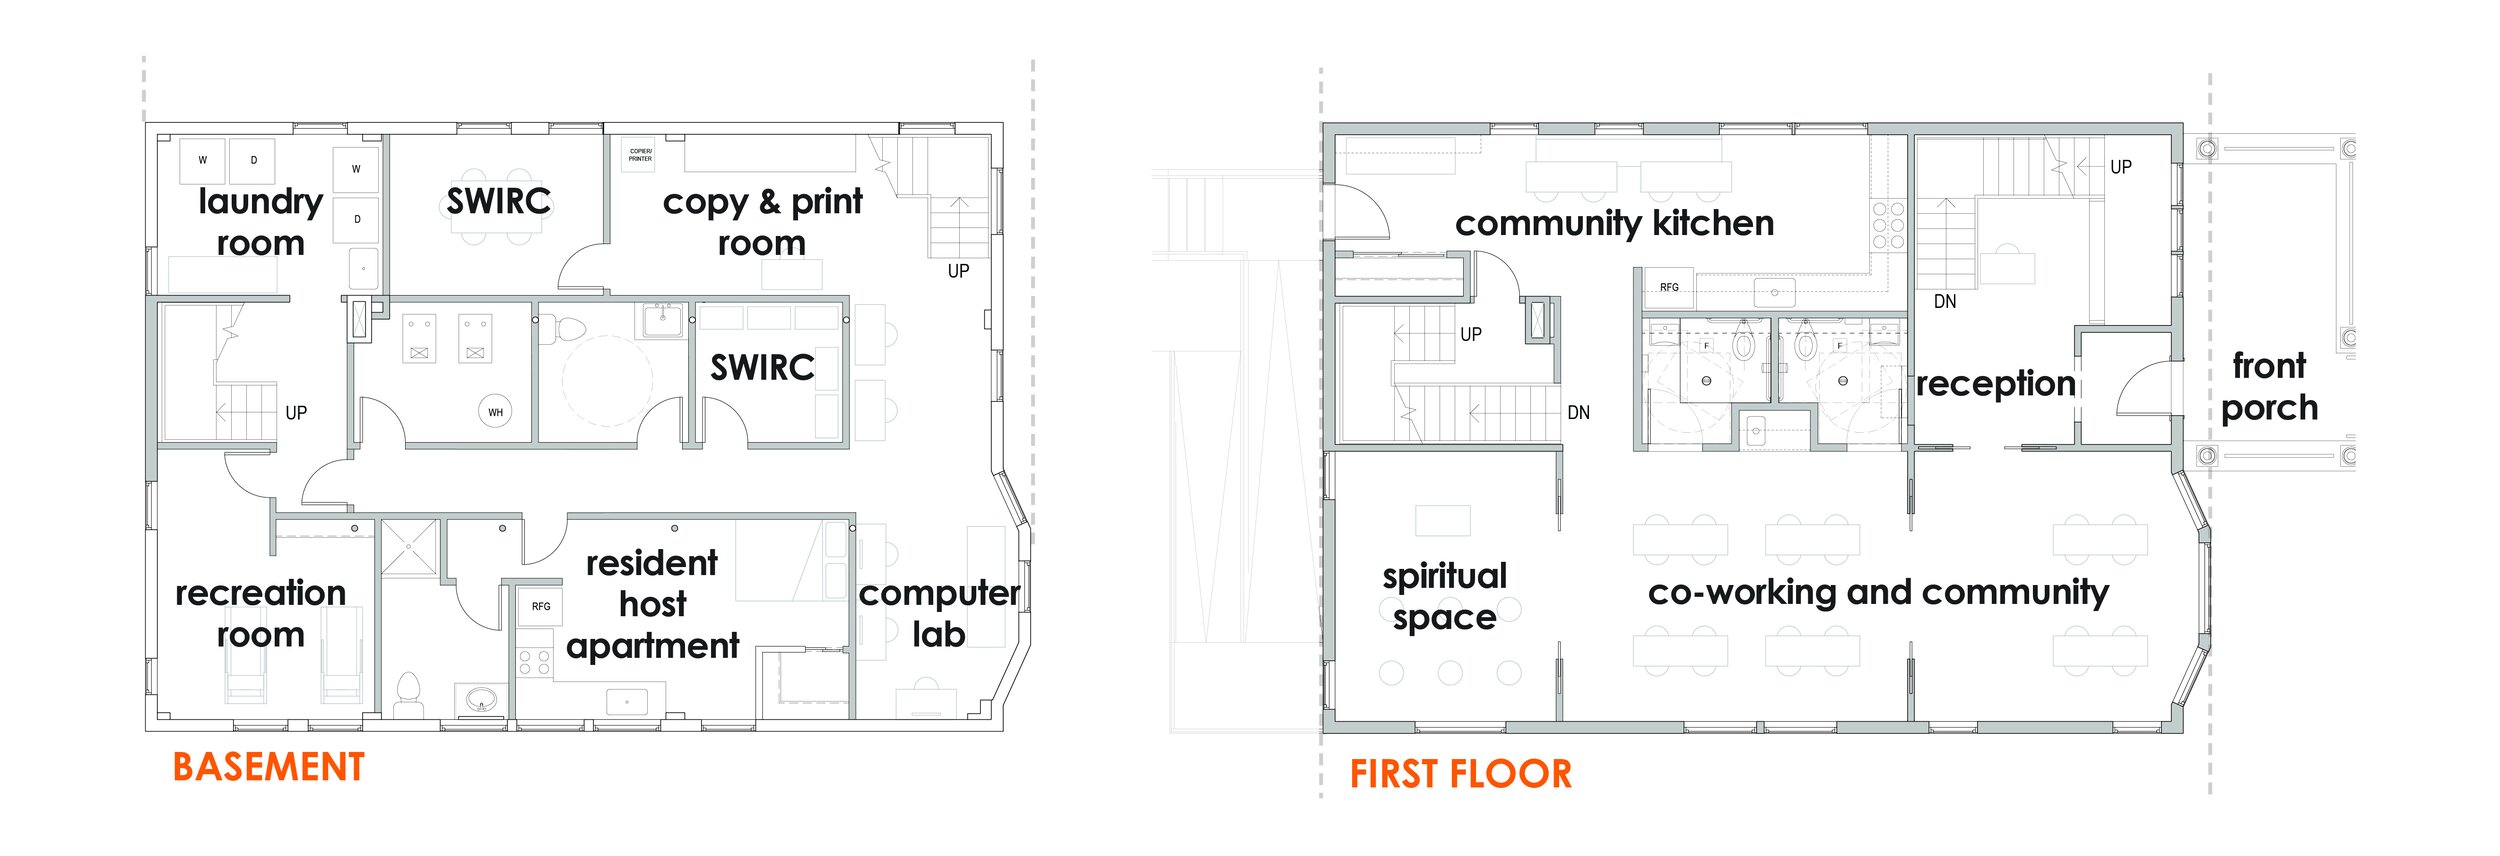 SW-Floor Plans Base-1.jpg